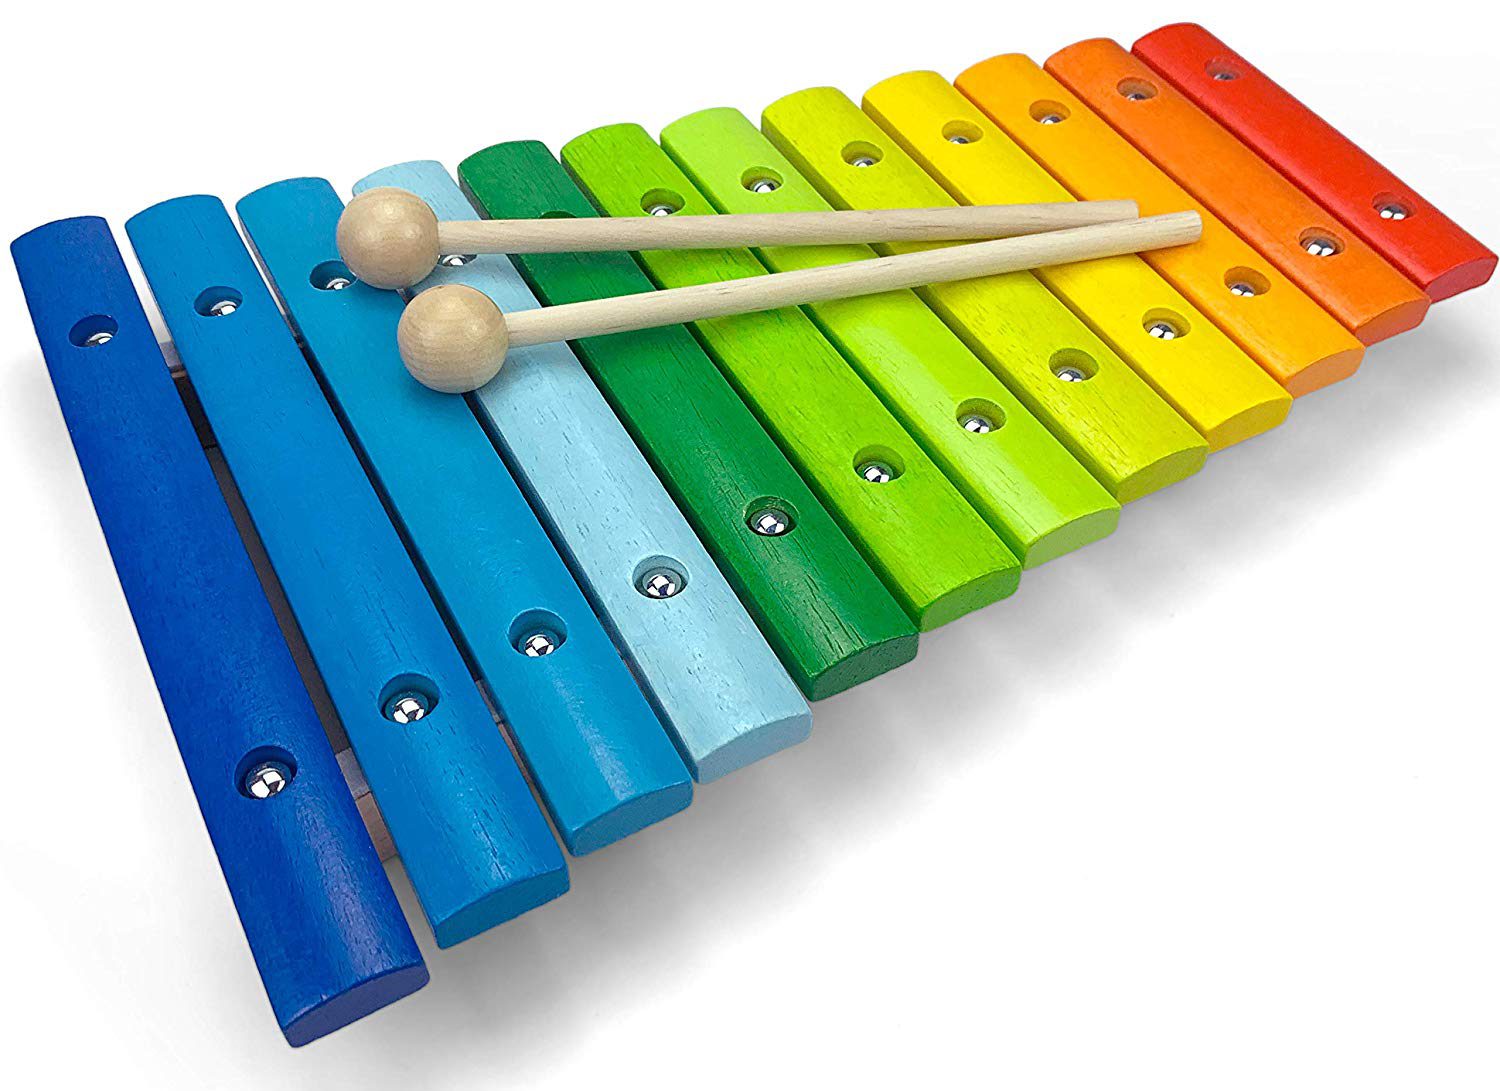 Kinder Xylophon Glockenspiel Holz 8 Klänge Musik Instrument Spielzeug Lernen NEU 